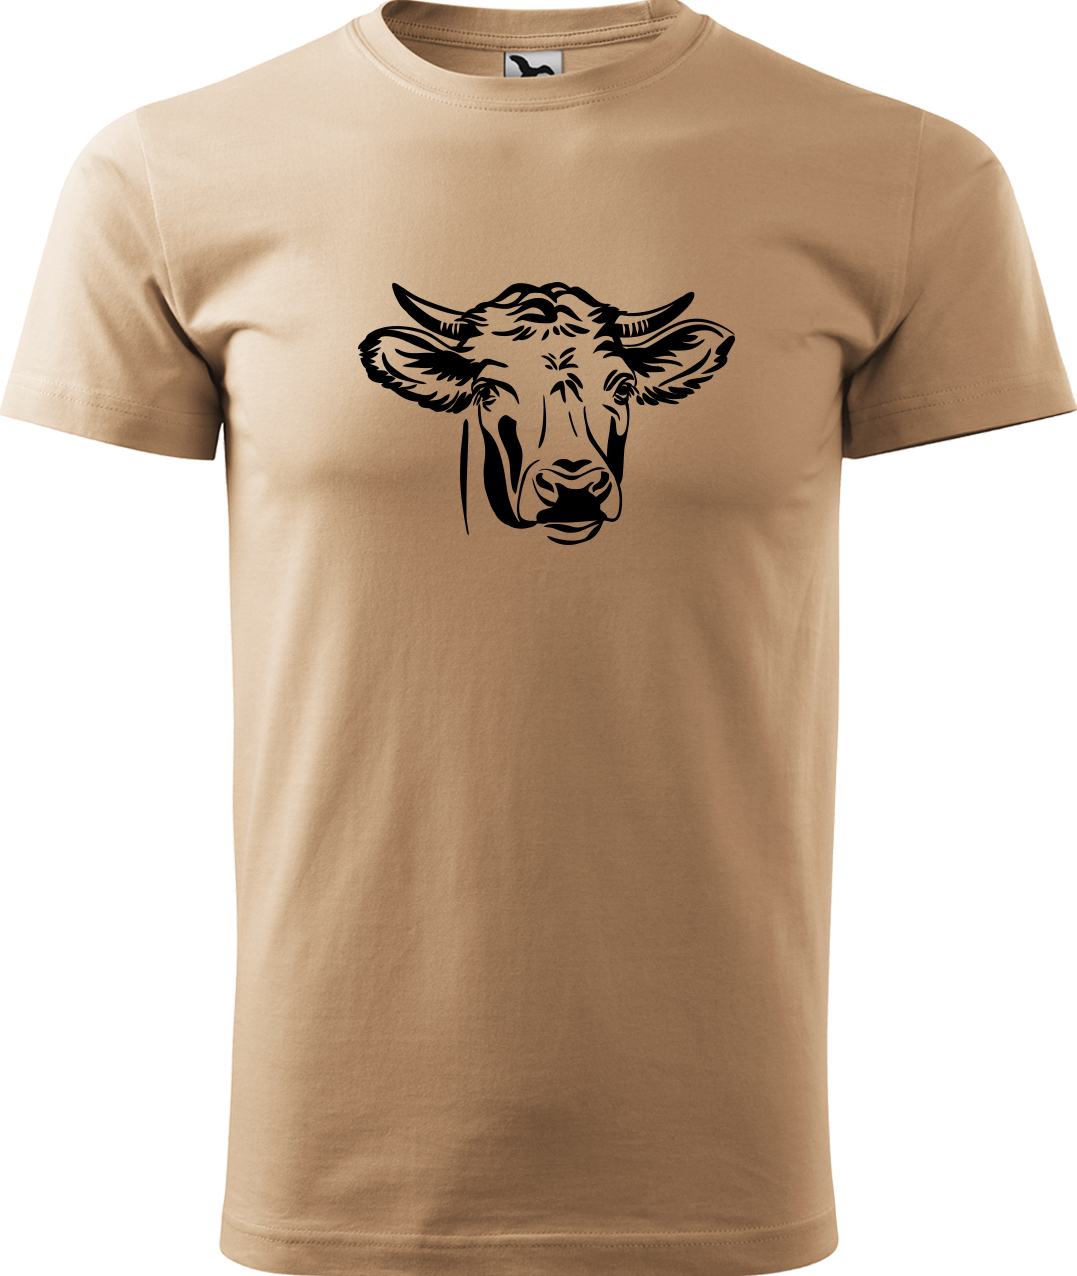 Pánské tričko s krávou - Hlava krávy Velikost: M, Barva: Písková (08), Střih: pánský